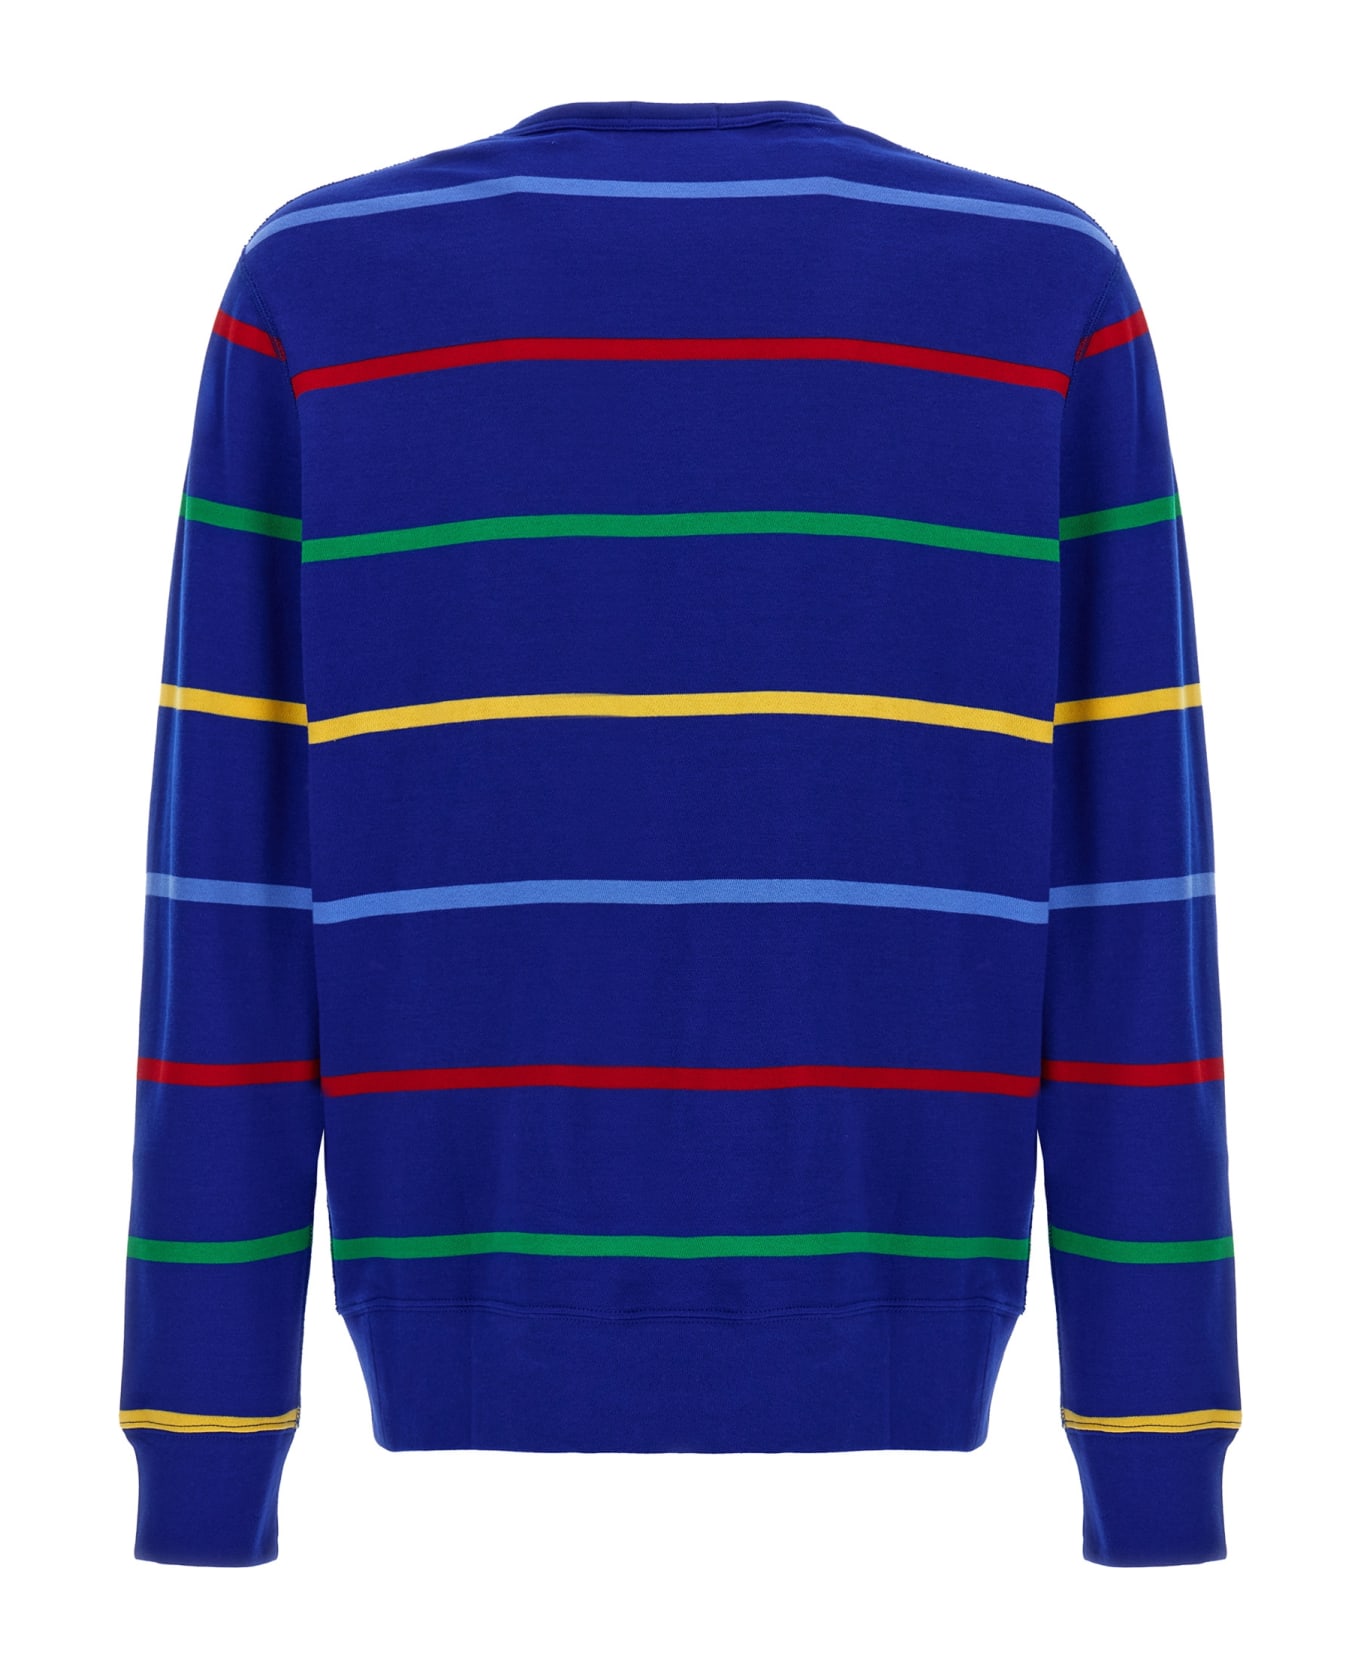 Polo Ralph Lauren Striped Polo Shirt - Multicolor